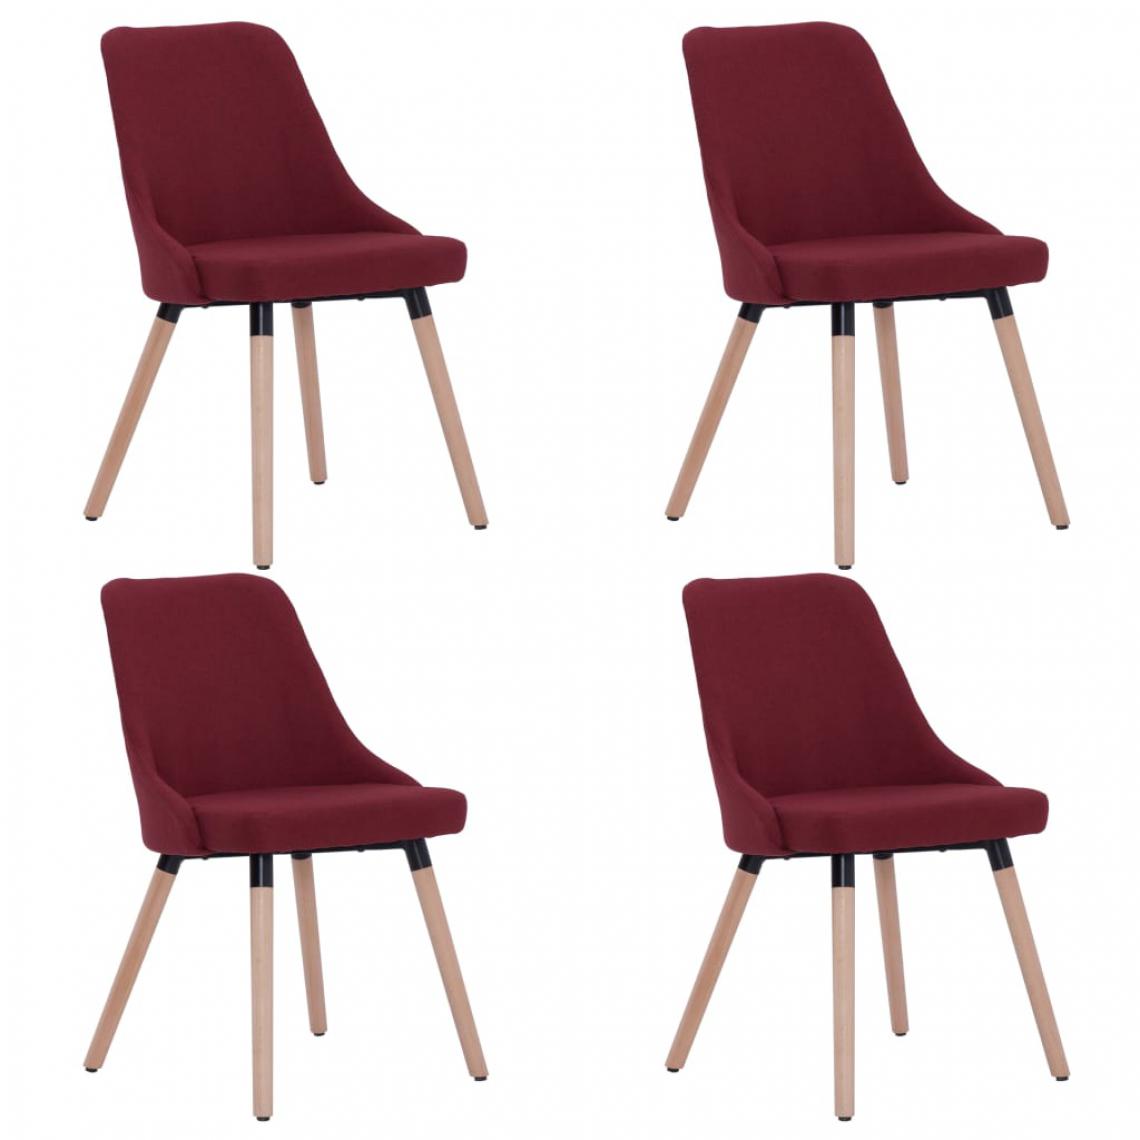 Icaverne - Icaverne - Chaises de cuisine ensemble Chaises de salle à manger 4 pcs Rouge bordeaux Tissu - Chaises